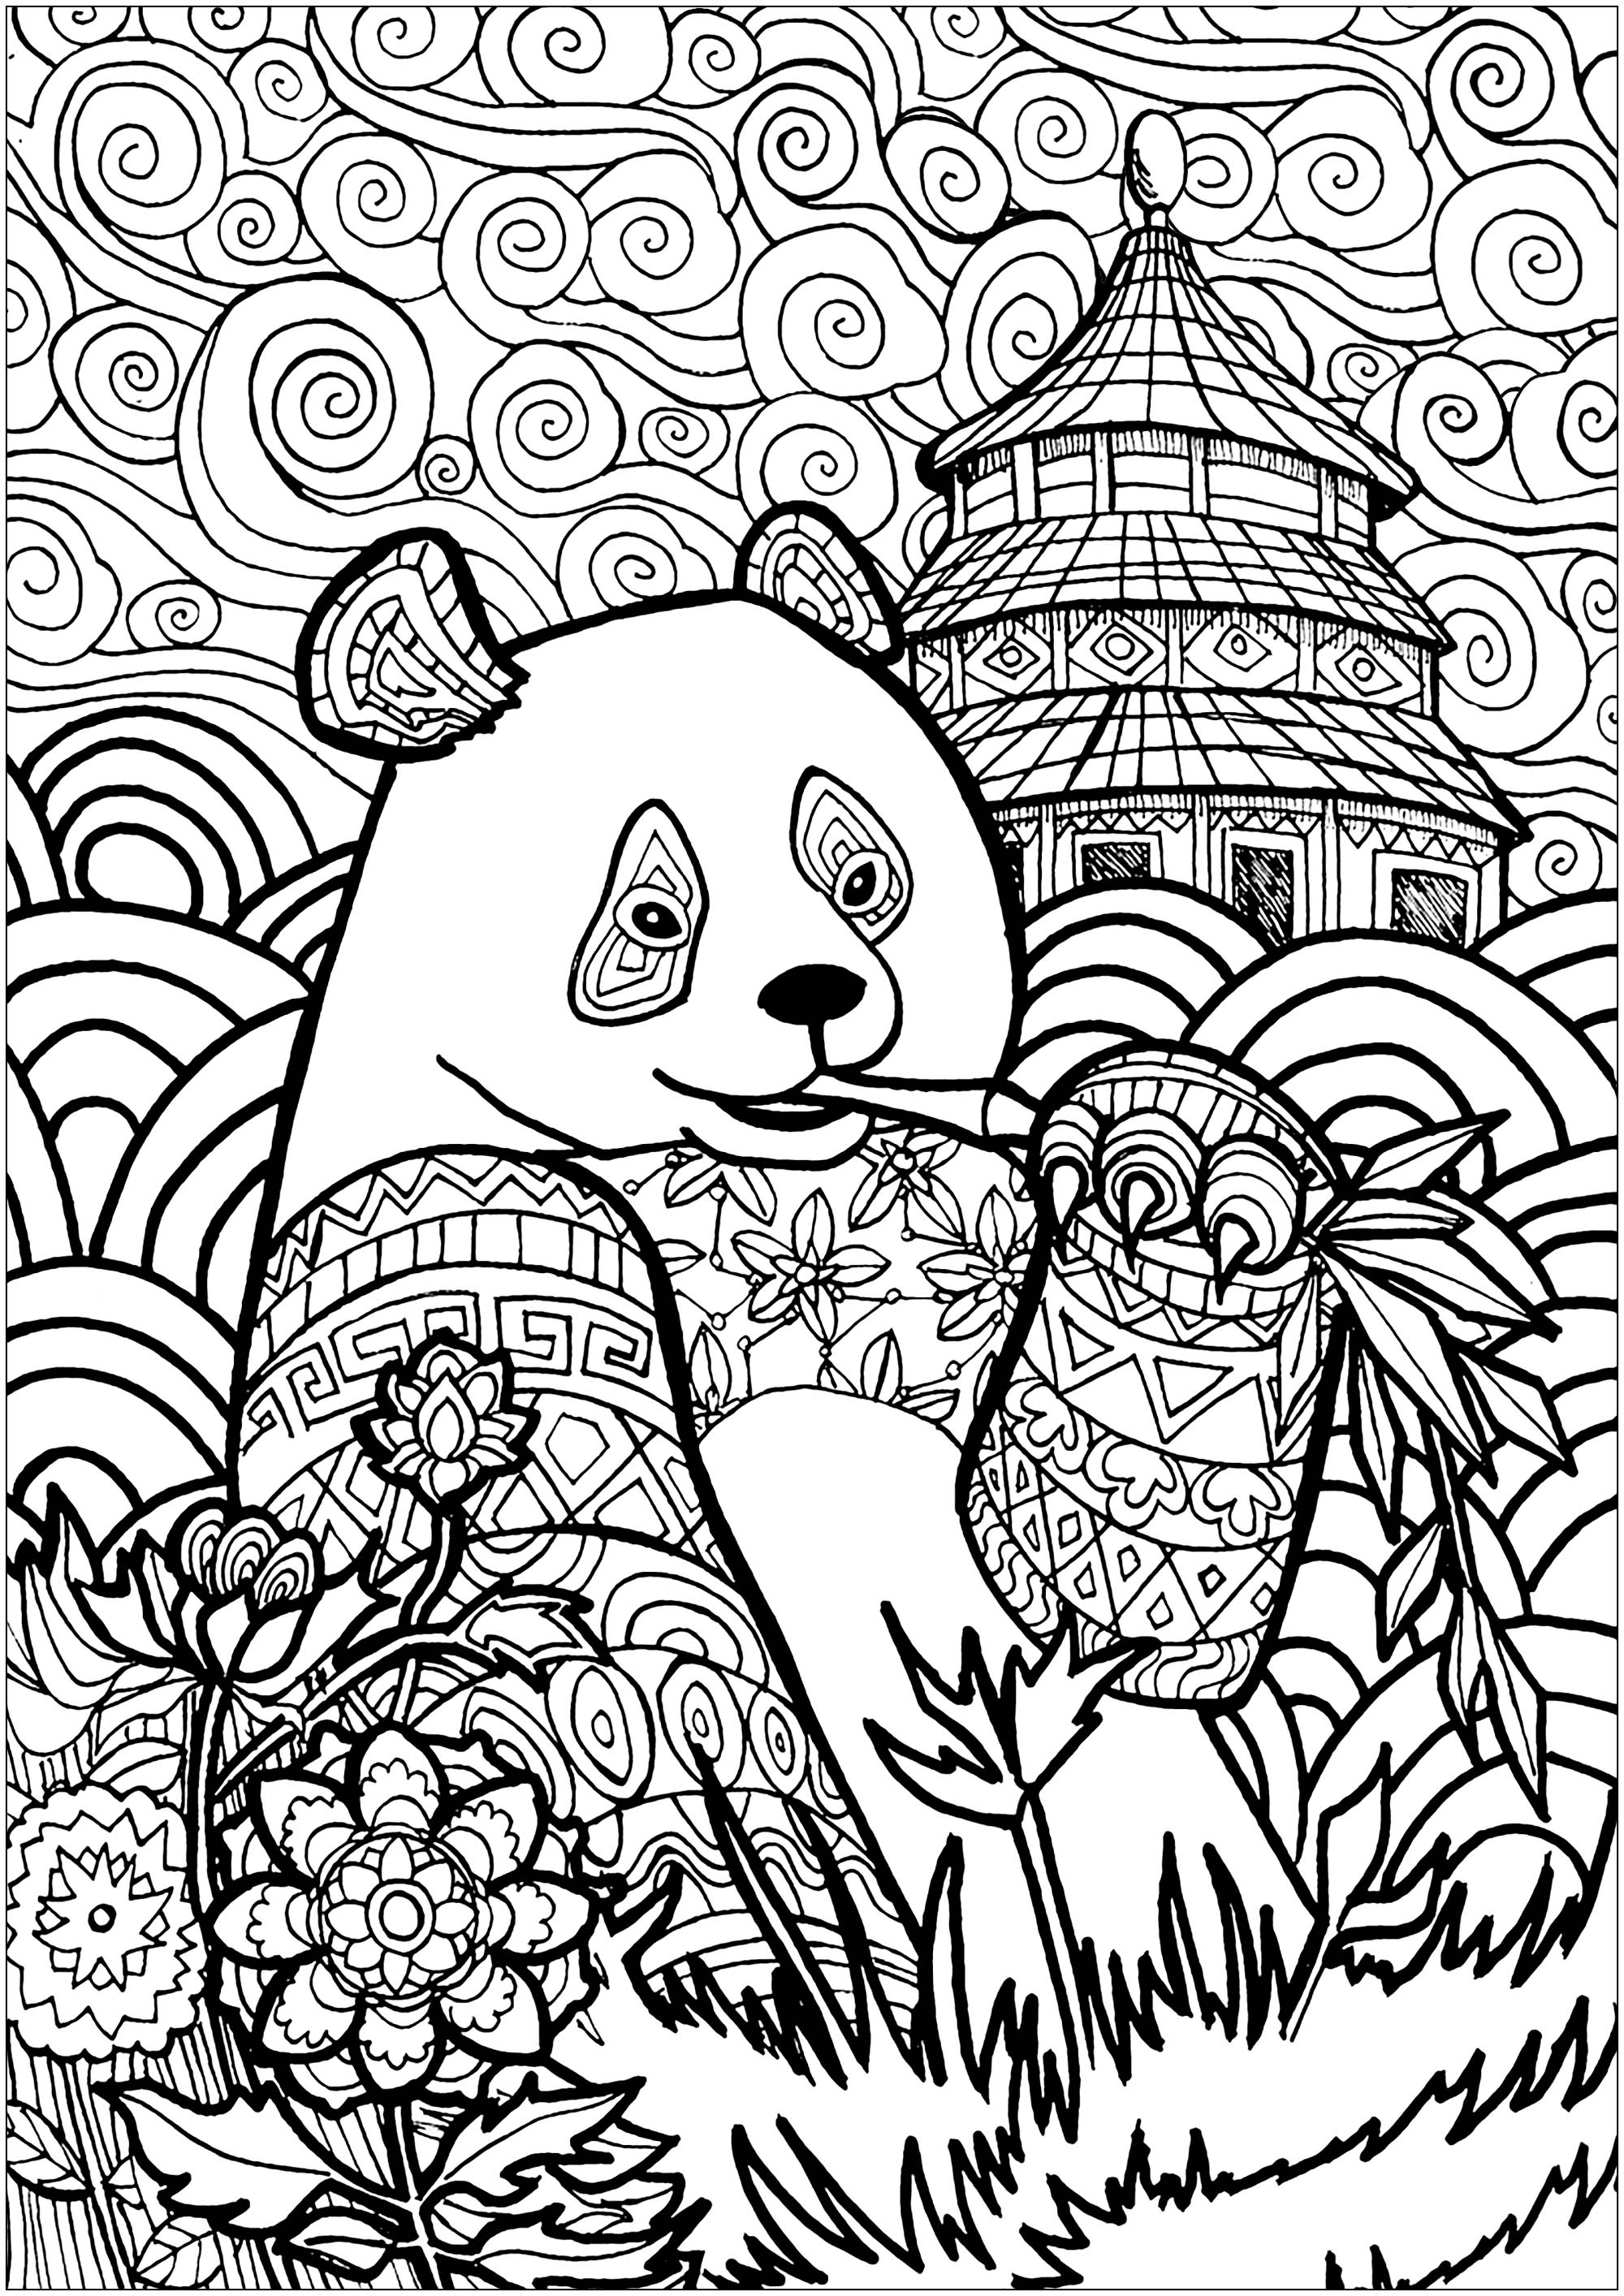 Disegni da Colorare per Adulti : Panda - 1